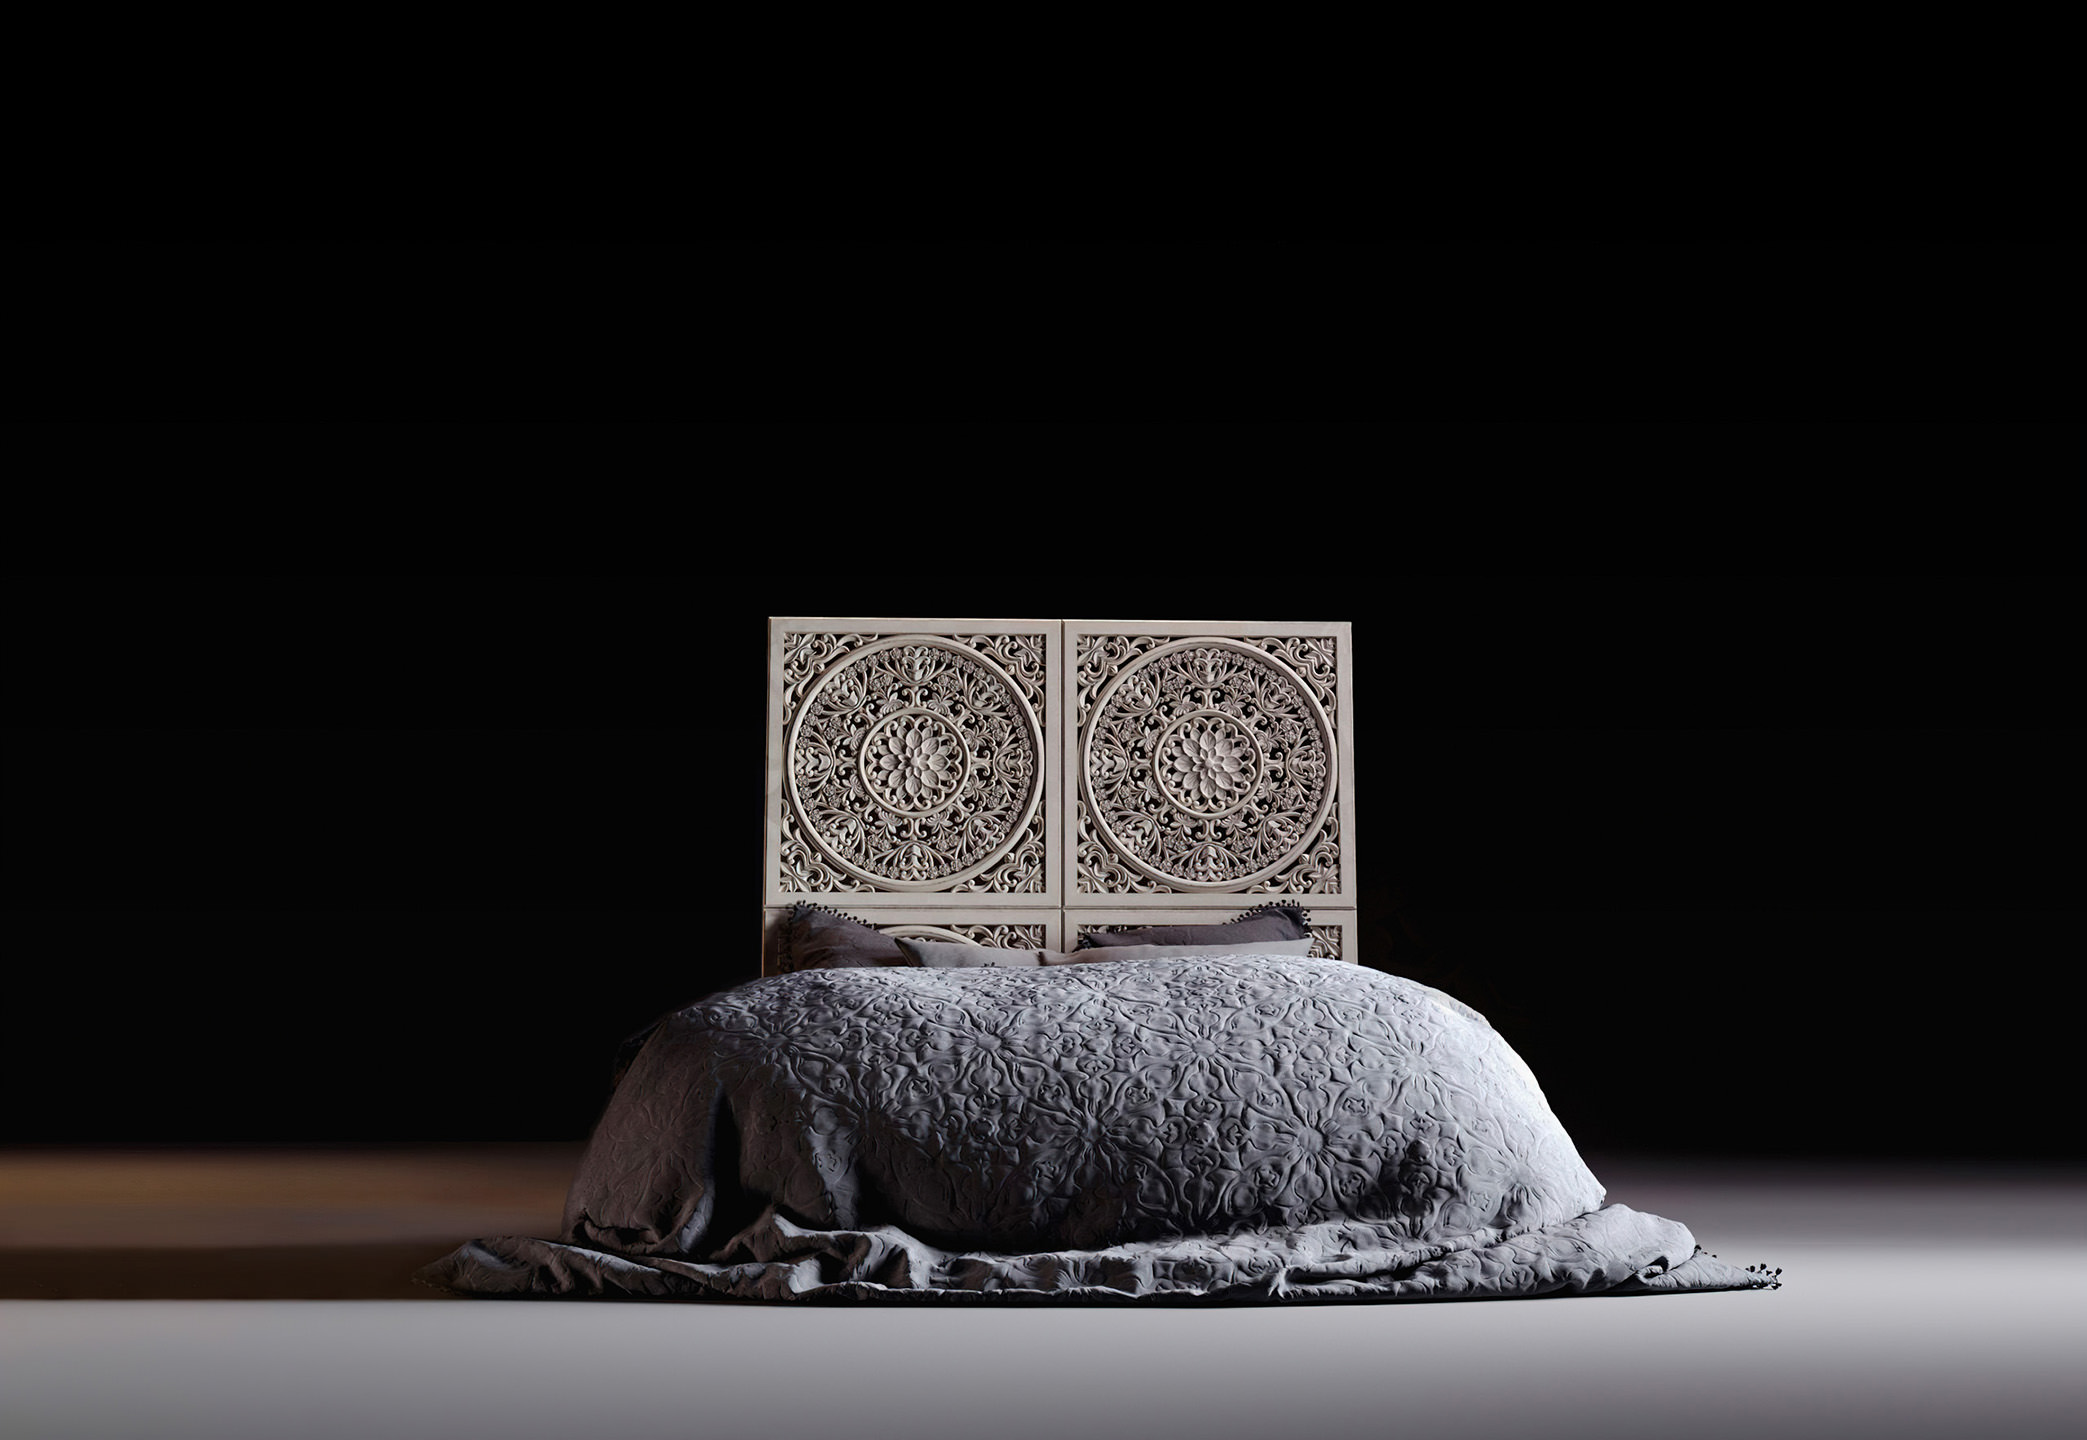 Image de synthèse 3D d'un lit de style baroque dans des teints gris